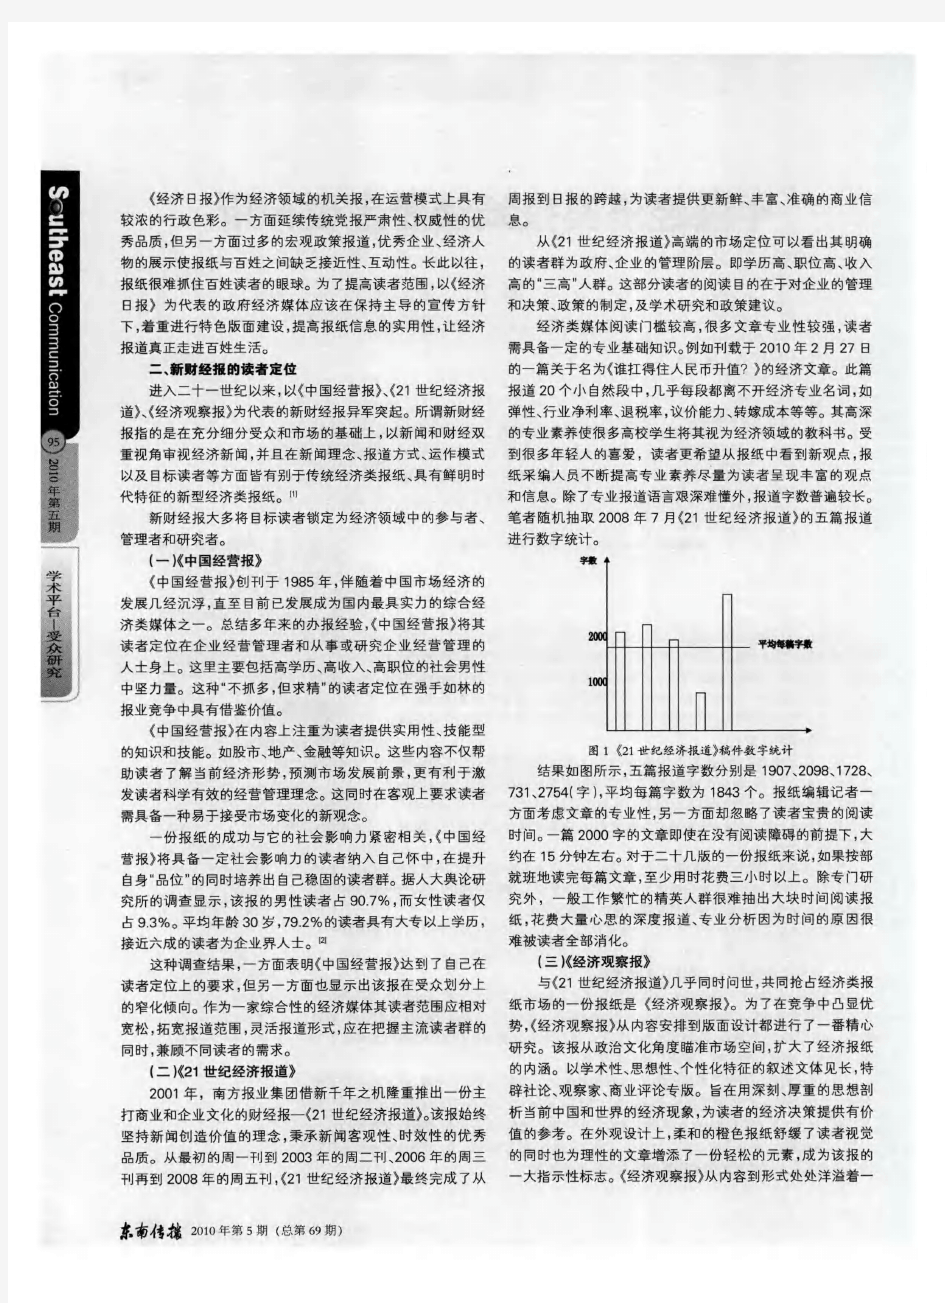 中国经济类报纸读者定位分析